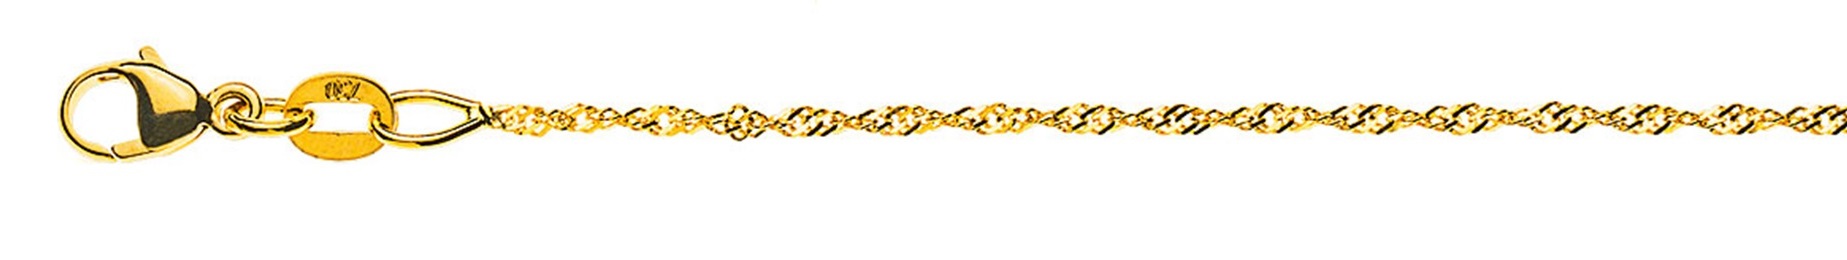 AURONOS Prestige Halskette Gelbgold 18K Singapurkette 55cm 1.2mm